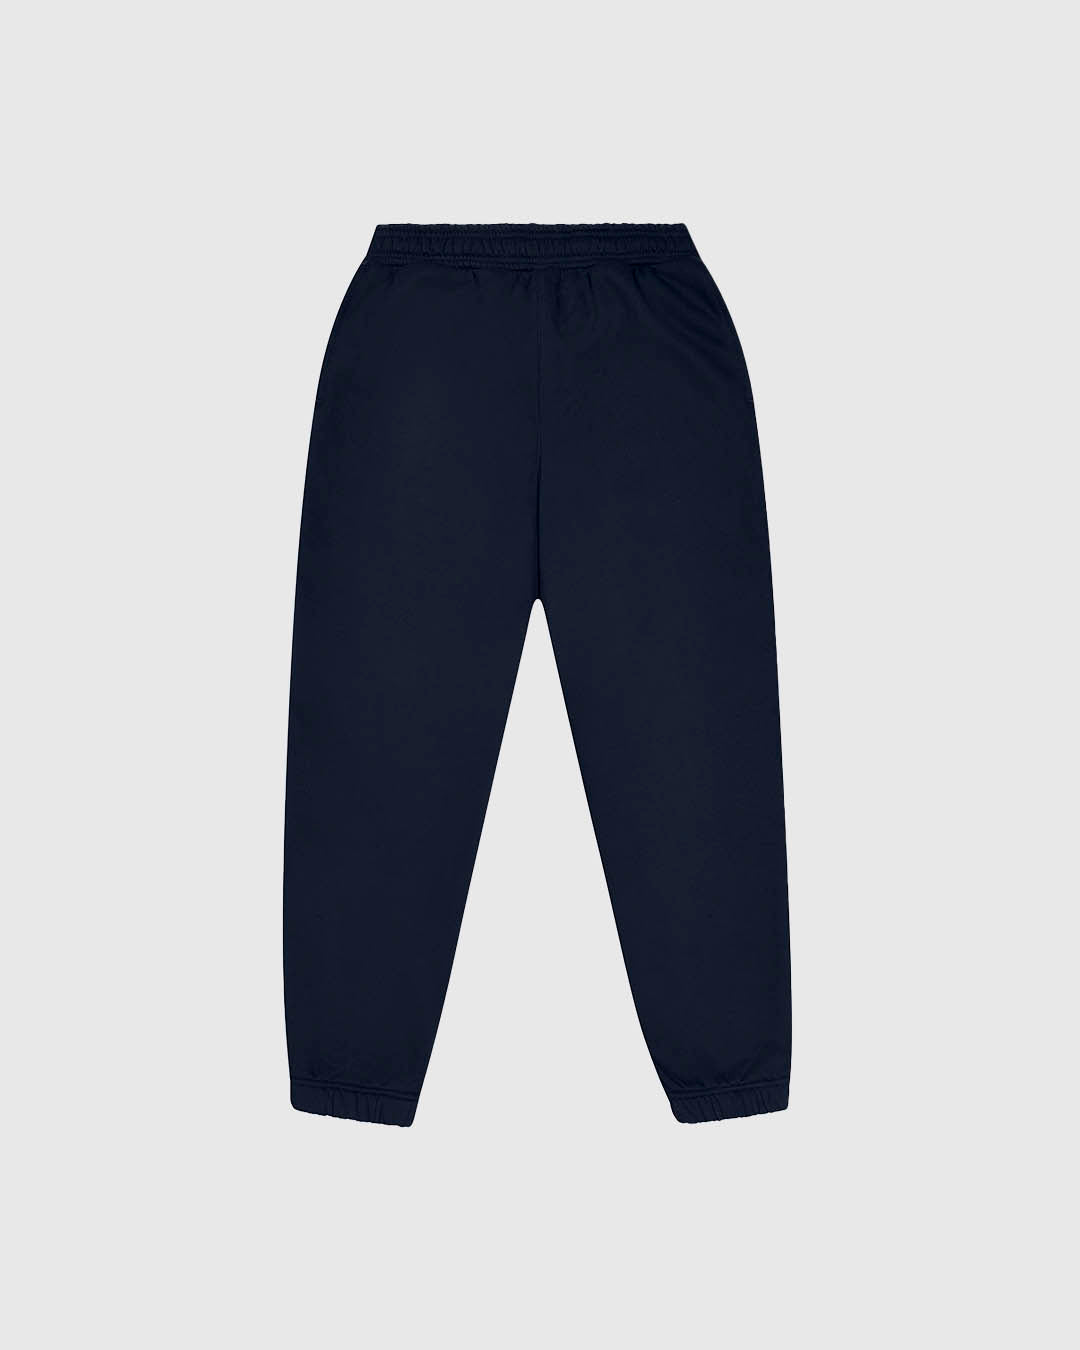 PFC: 003-3 - Women's Sweatpants - Navy